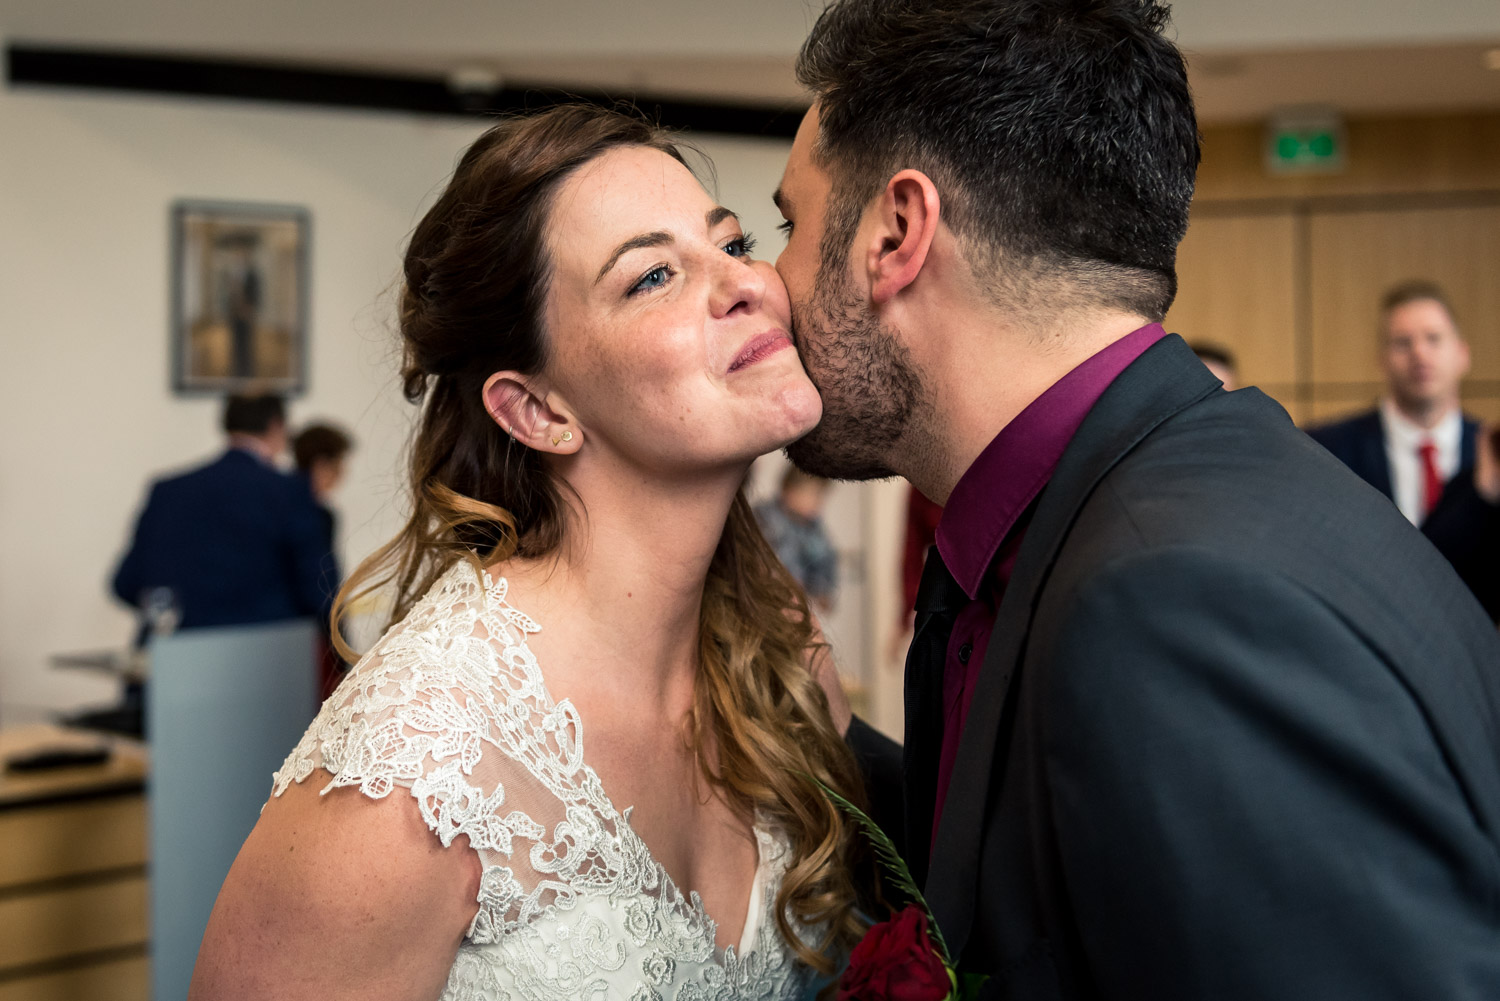 de bruidsfotograaf legt een emotioneel moment vast tijdens een h